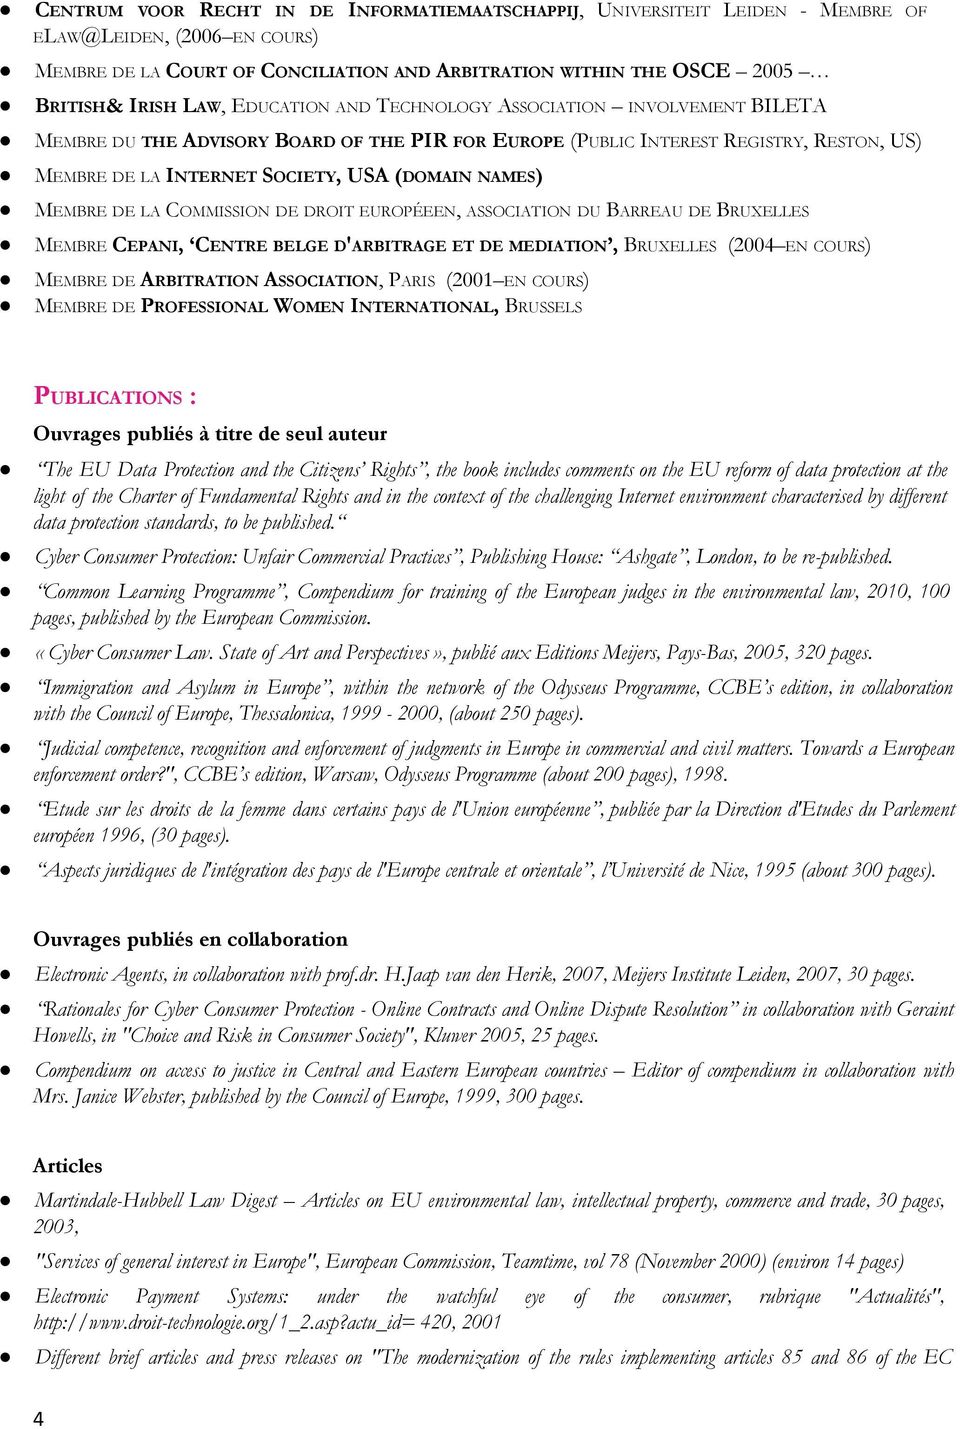 NAMES) MEMBRE DE LA COMMISSION DE DROIT EUROPÉEEN, ASSOCIATION DU BARREAU DE BRUXELLES MEMBRE CEPANI, CENTRE BELGE D'ARBITRAGE ET DE MEDIATION, BRUXELLES (2004 EN COURS) MEMBRE DE ARBITRATION